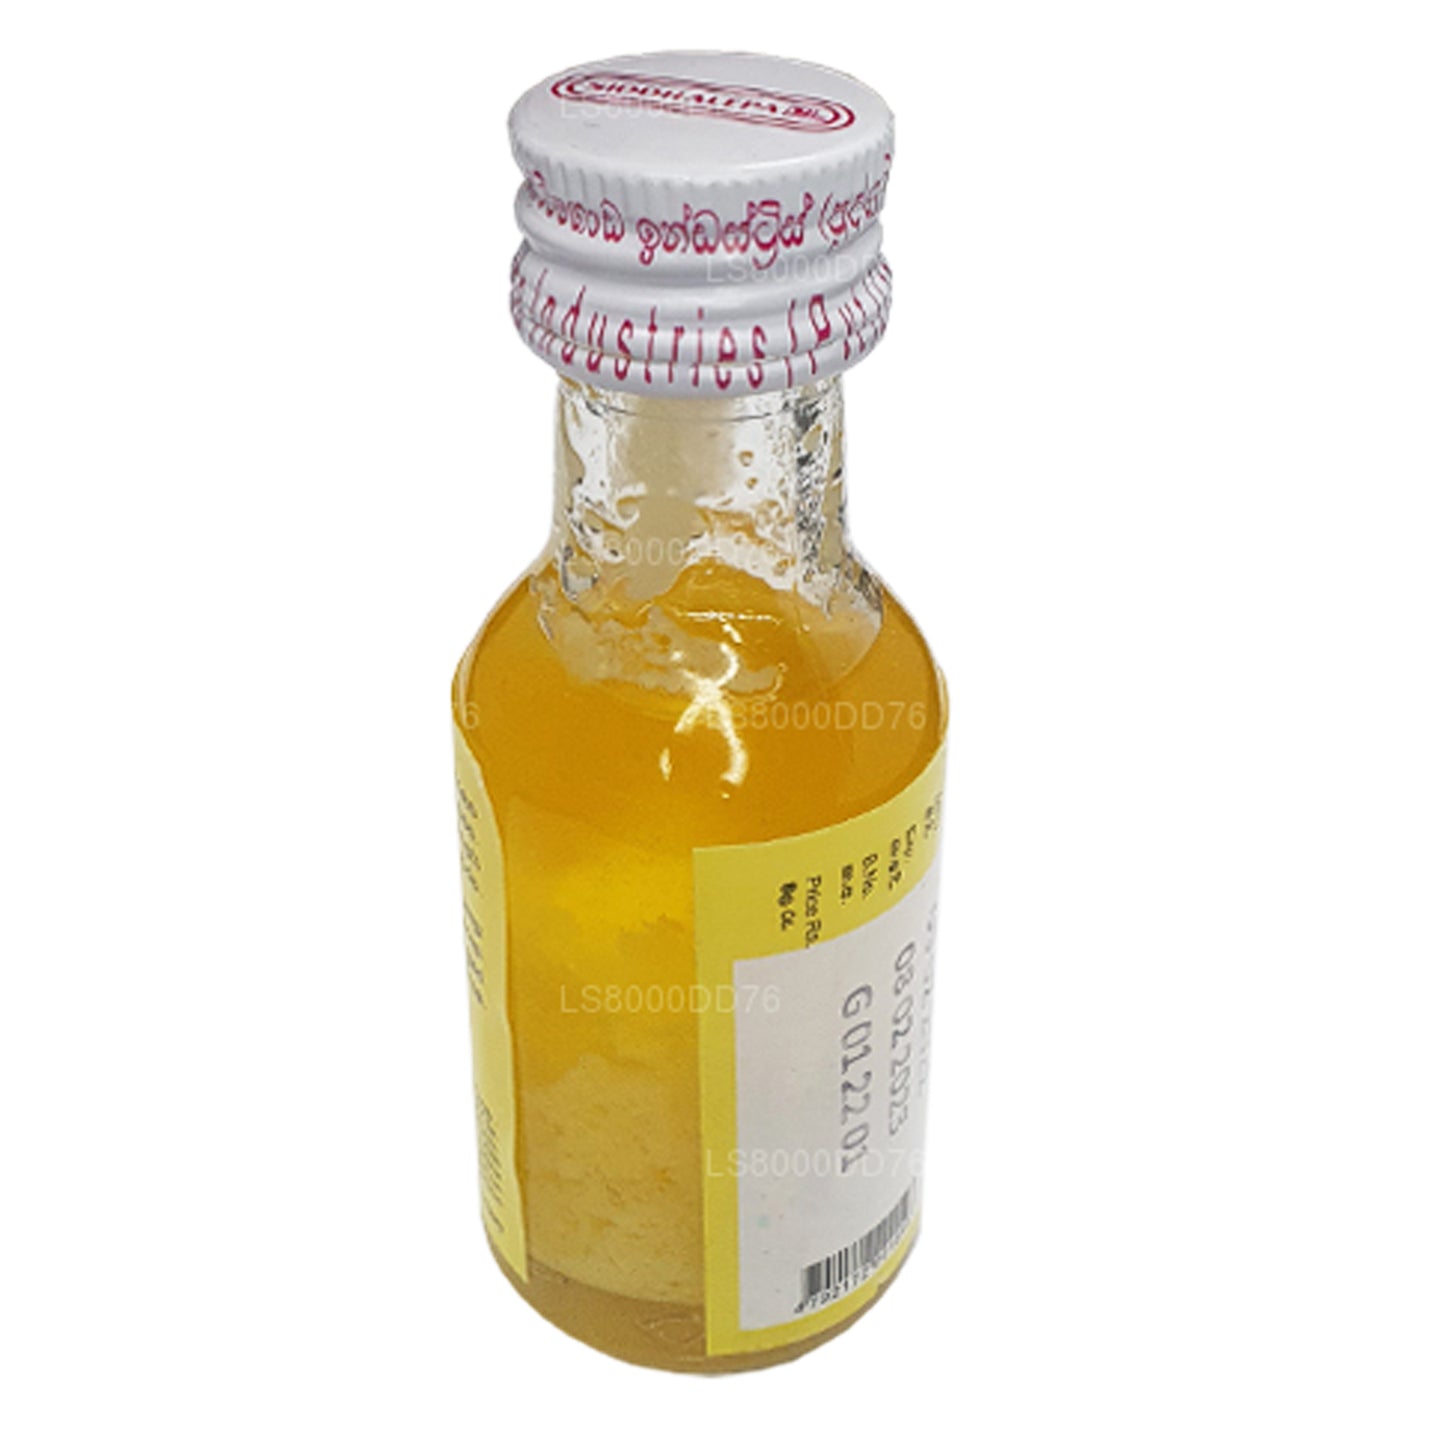 Aceite de ghee Siddhalepa (30 ml)